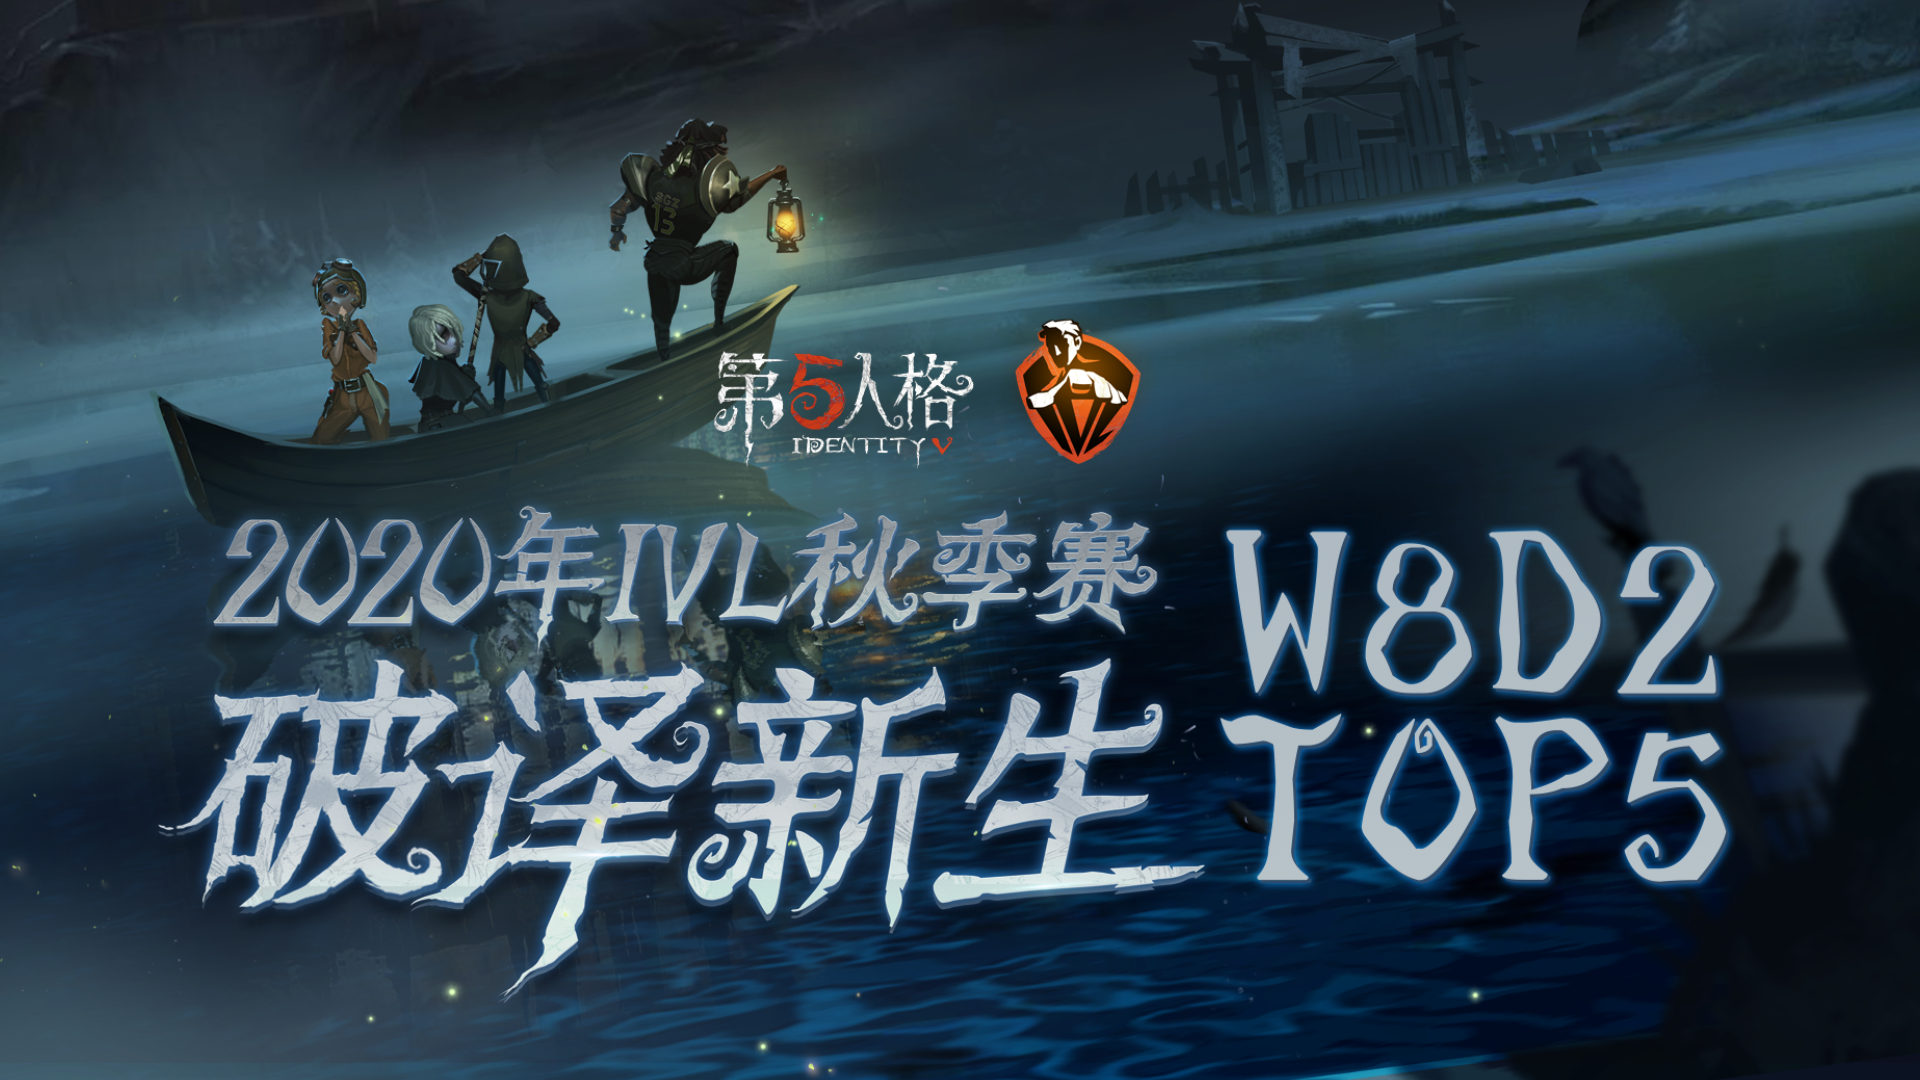 IVL秋季赛W8D2 TOP5：Weibo求生者完美拉扯惊艳四跑